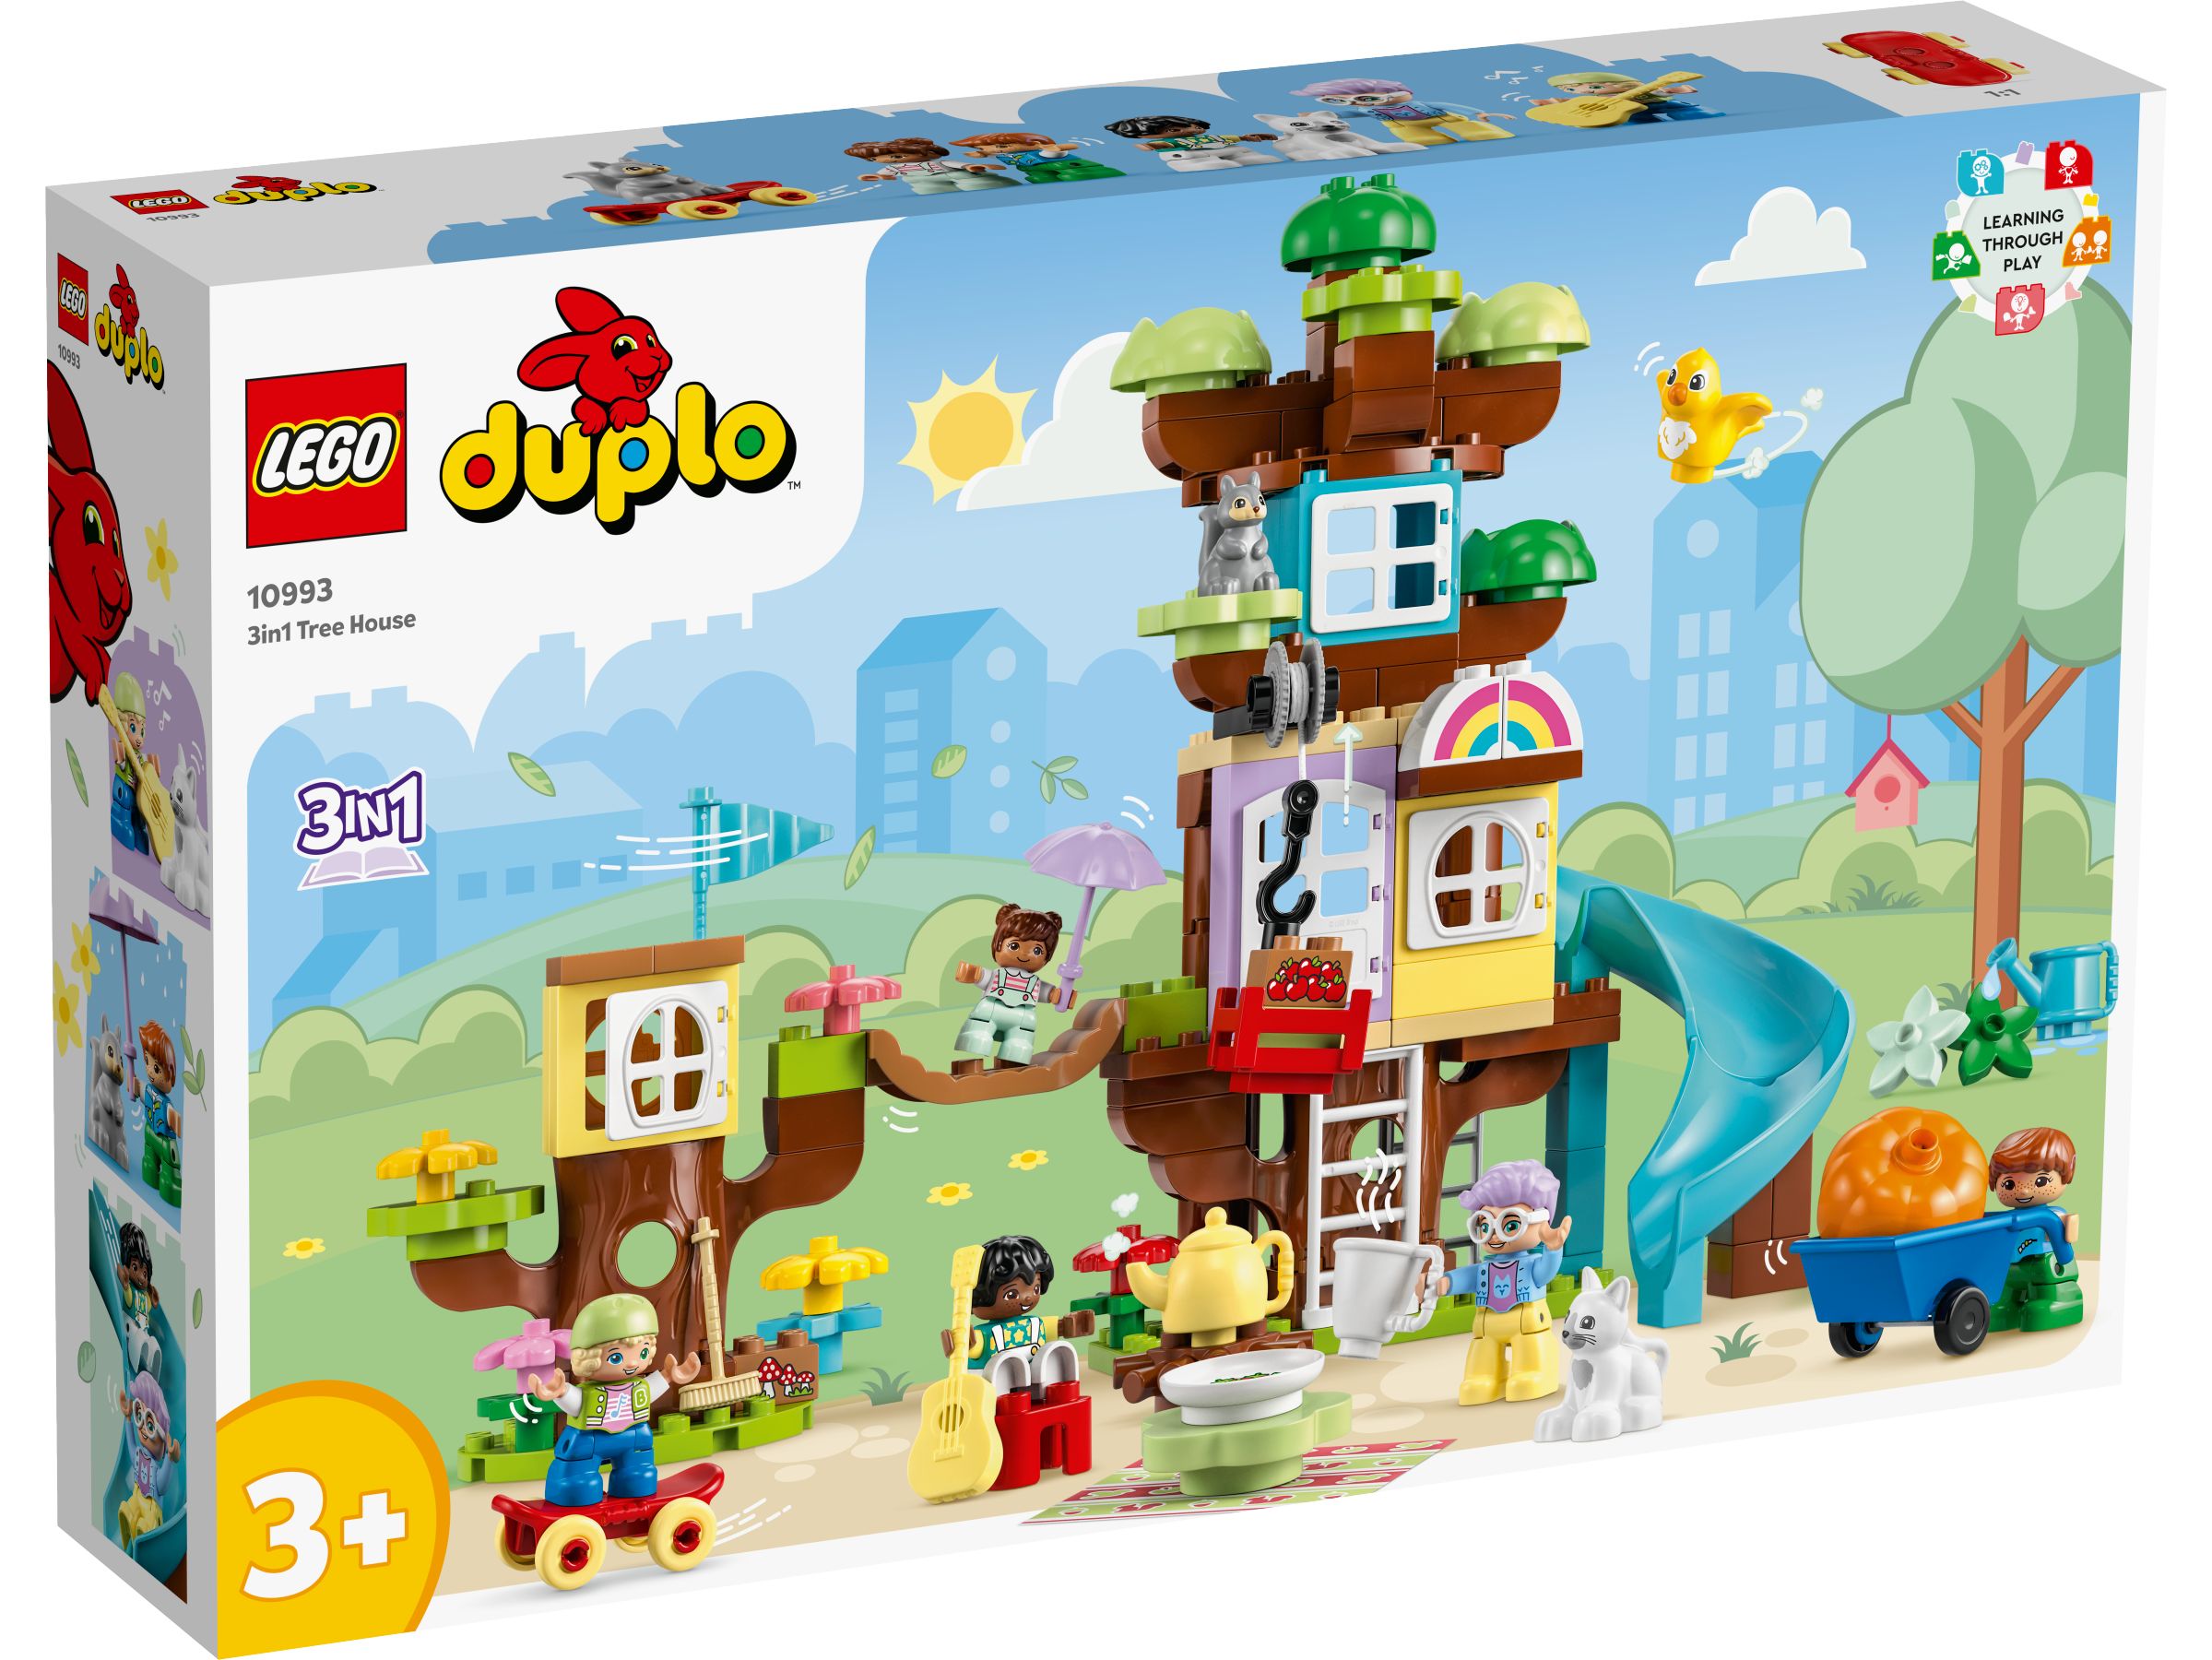 LEGO Duplo 10993 3-in-1-Baumhaus LEGO_10993_Box1_v29.jpg